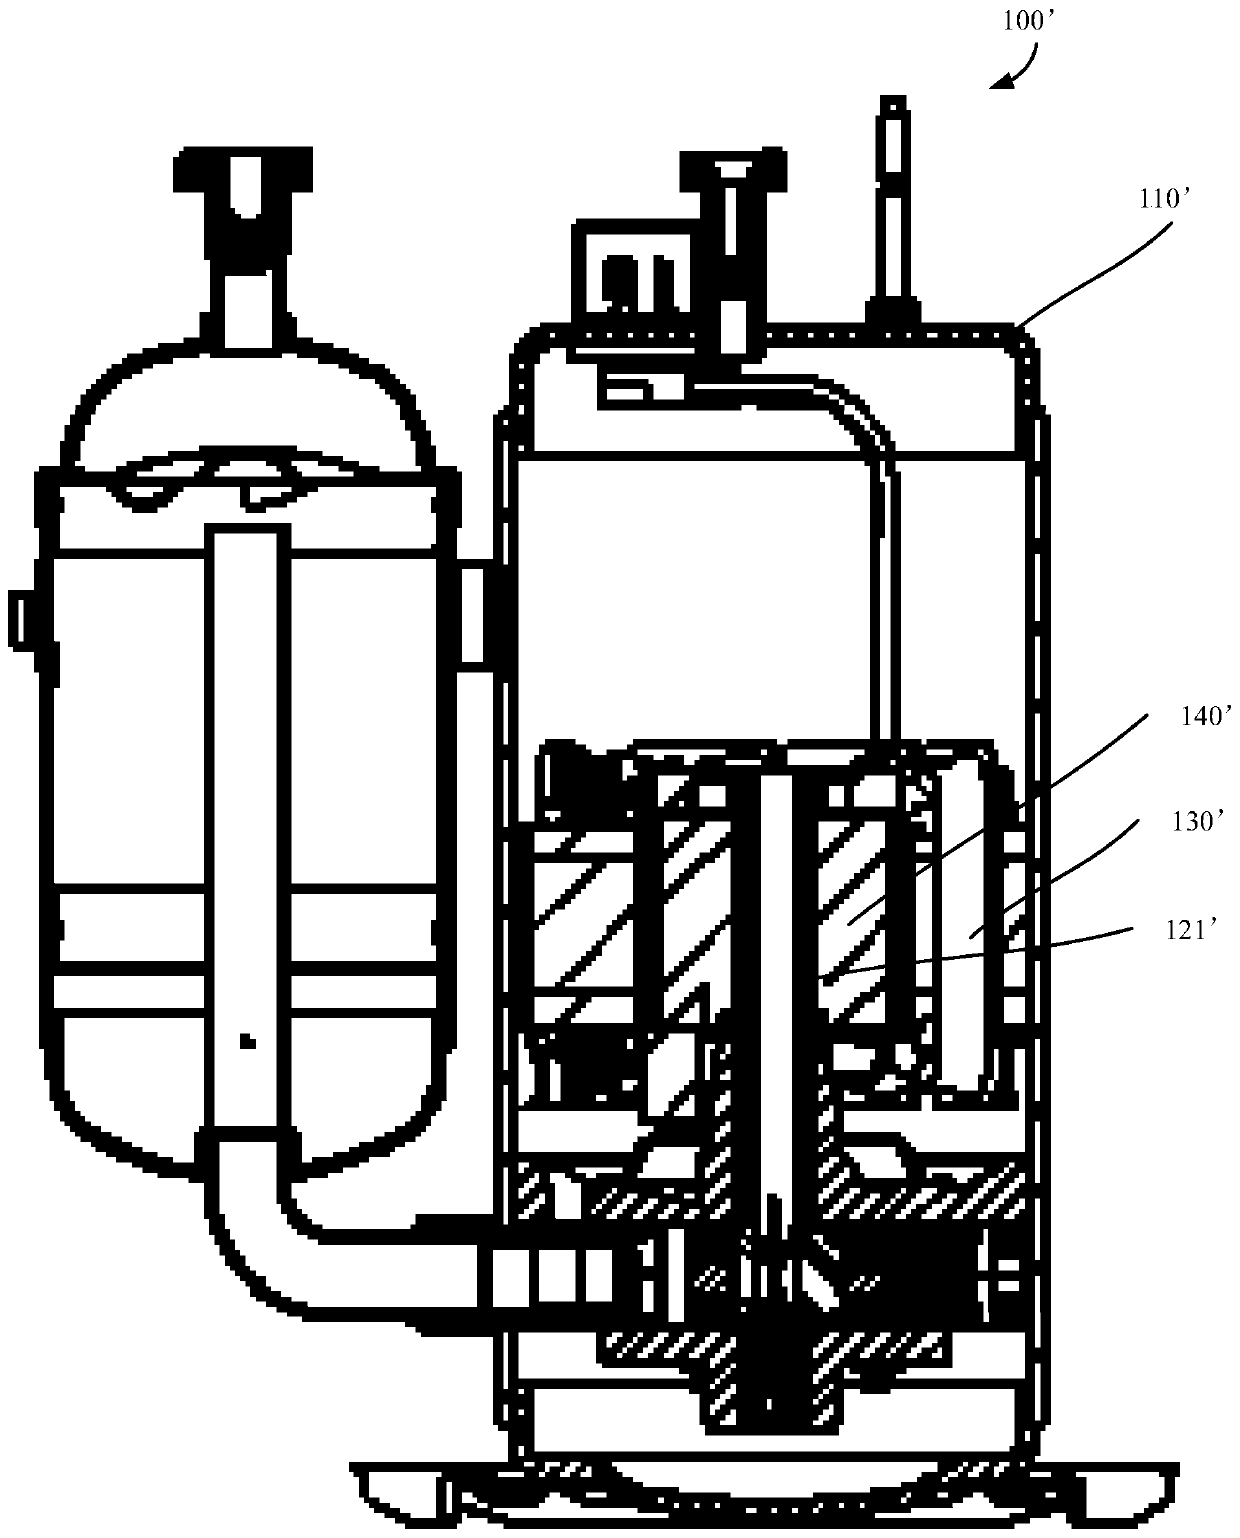 Compressor and refrigeration device